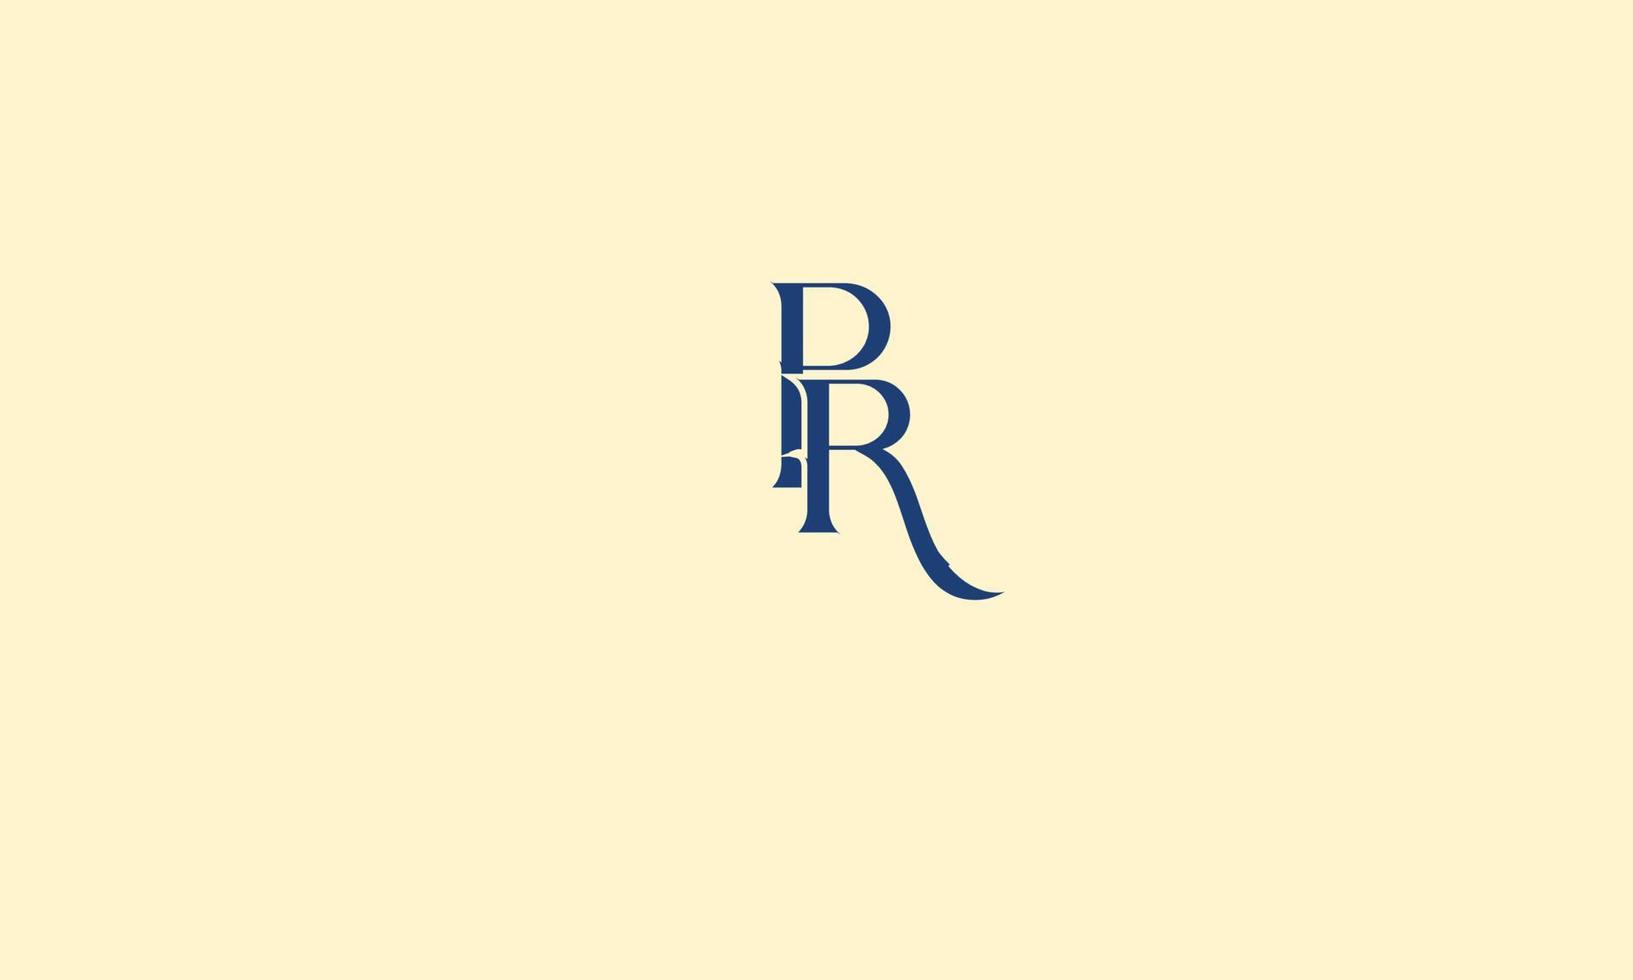 PR Alphabet letters Initials Monogram logo vector